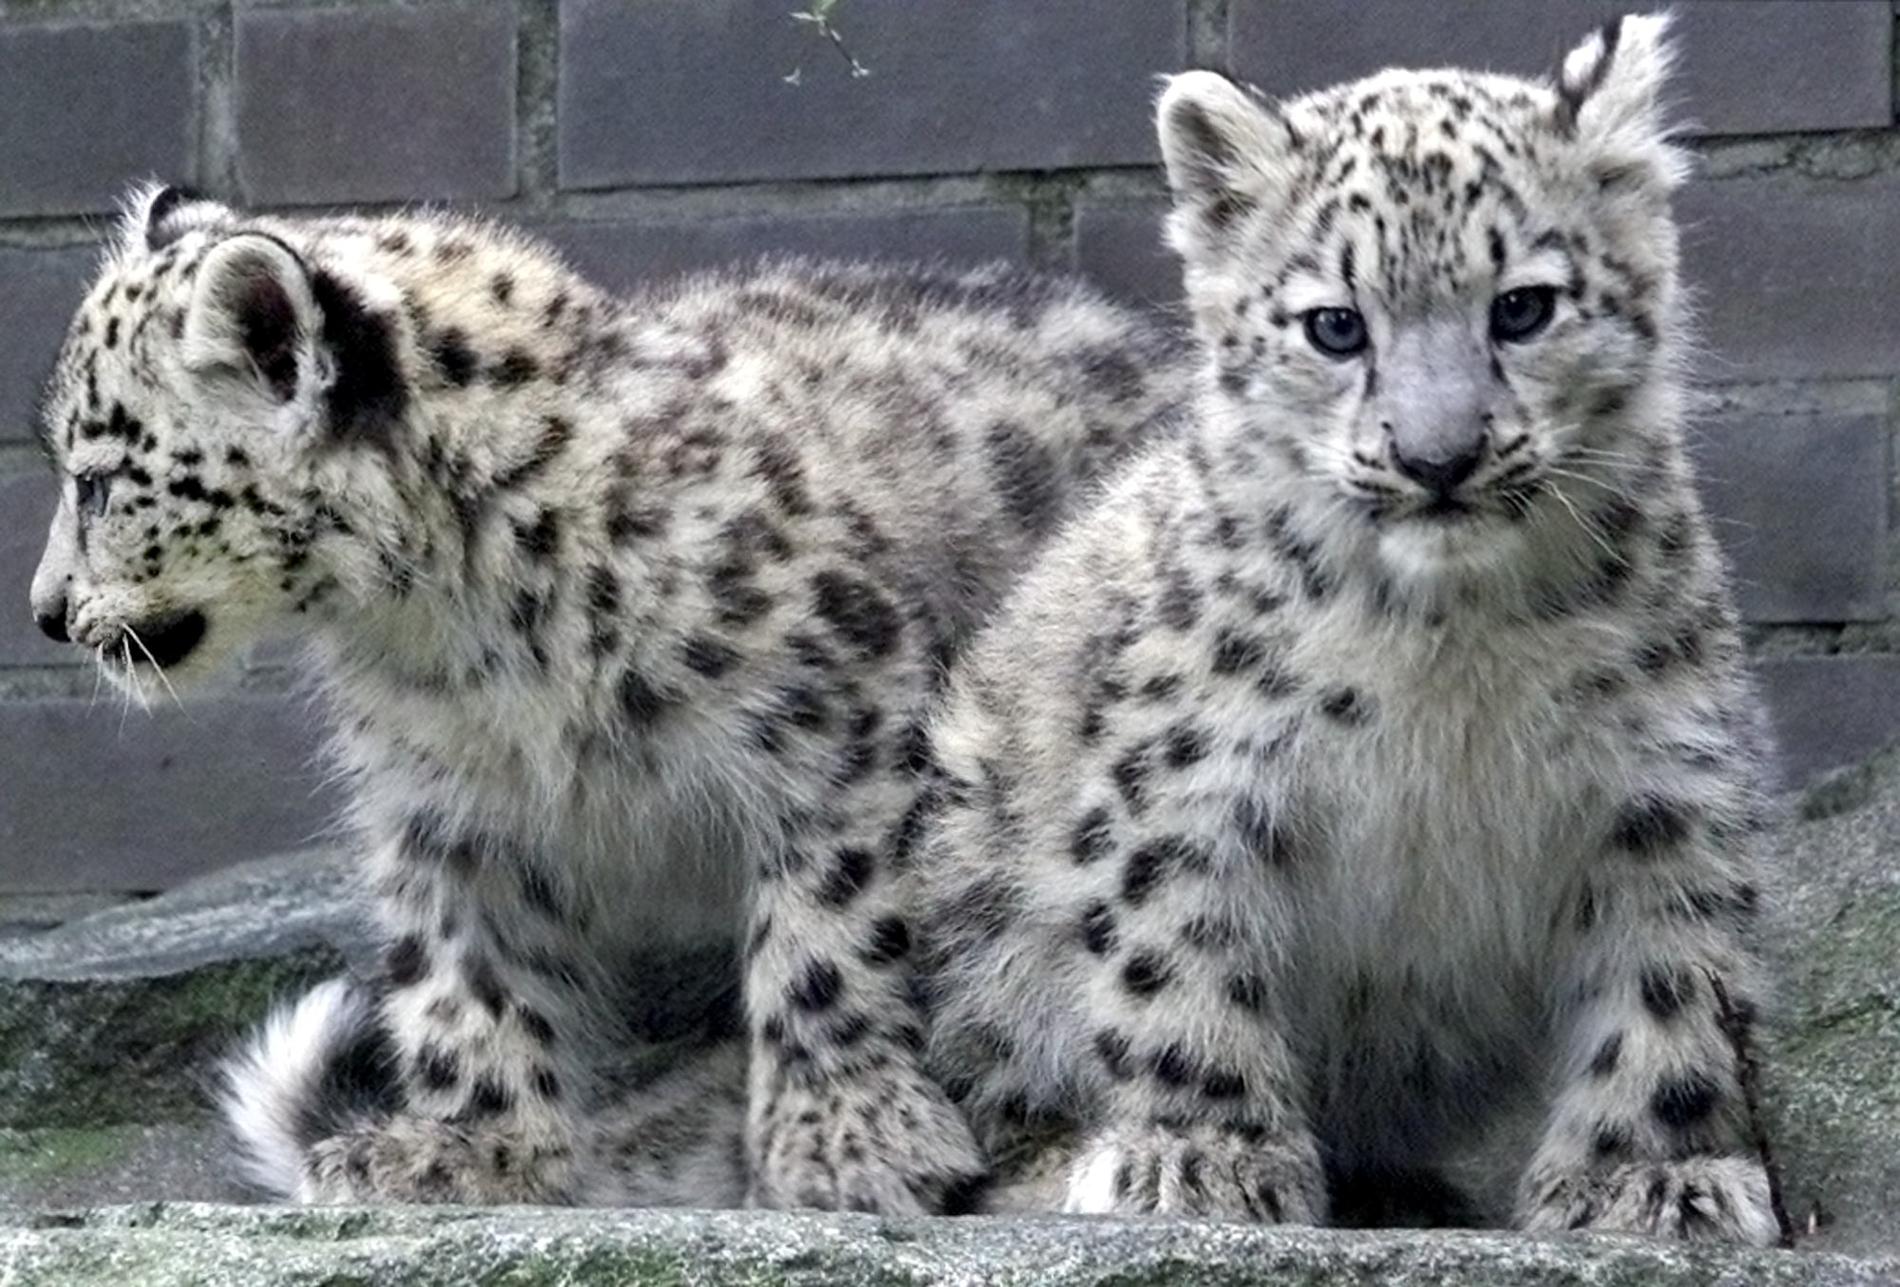 Tre nya snöleopardungar har hittats av ett forskarteam bestående av bland annat en forskare från SLU. På bilden syns två elva veckor gamla snöleopardungar på ett zoo i Tyskland. Arkivbild.